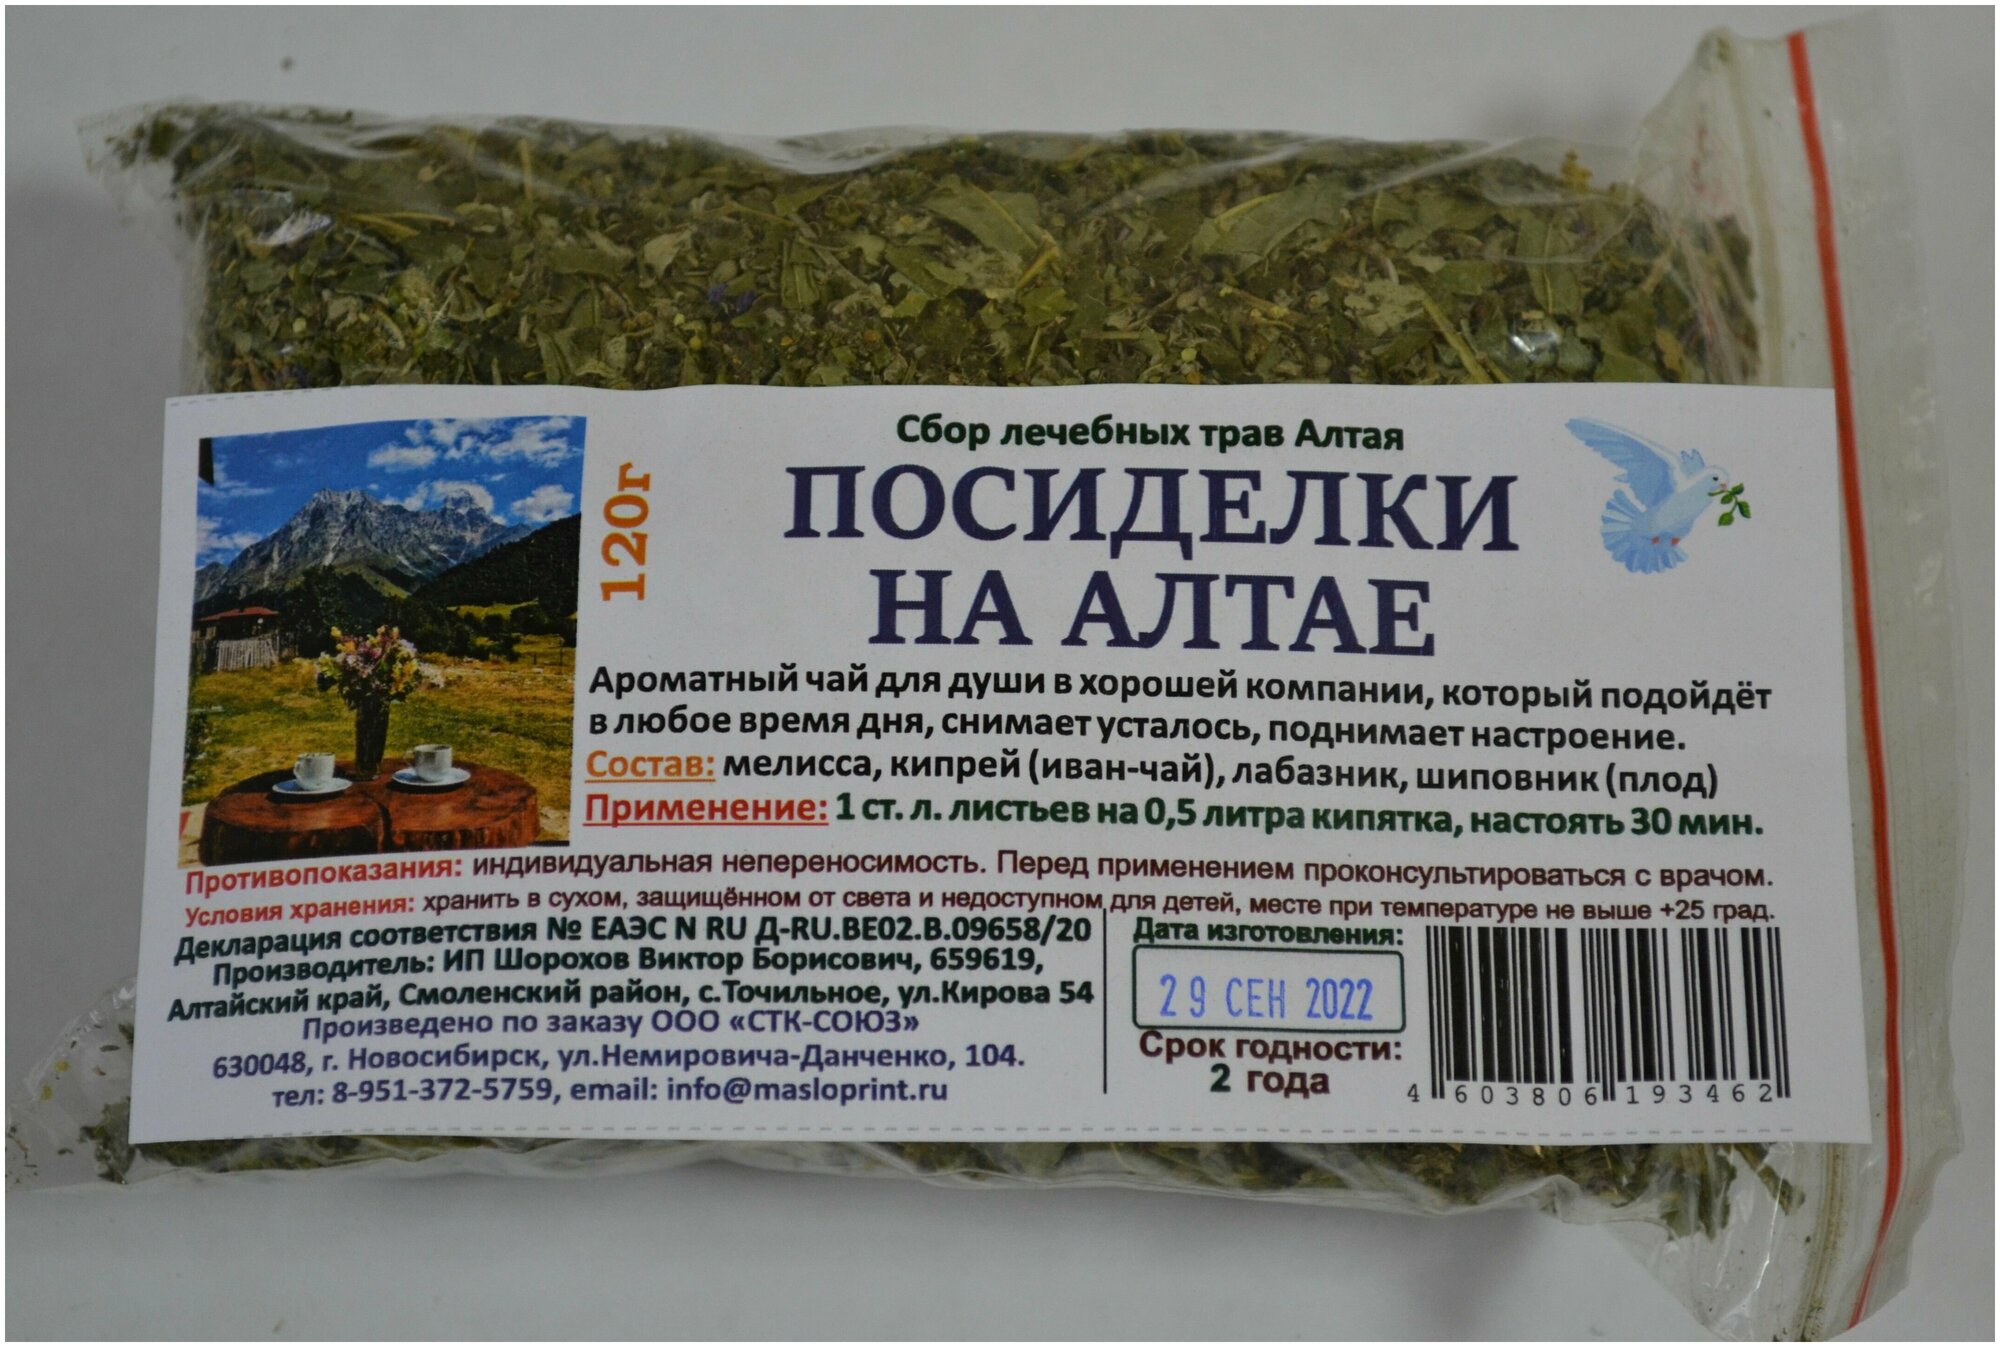 Травяной чай "Посиделки на Алтае"